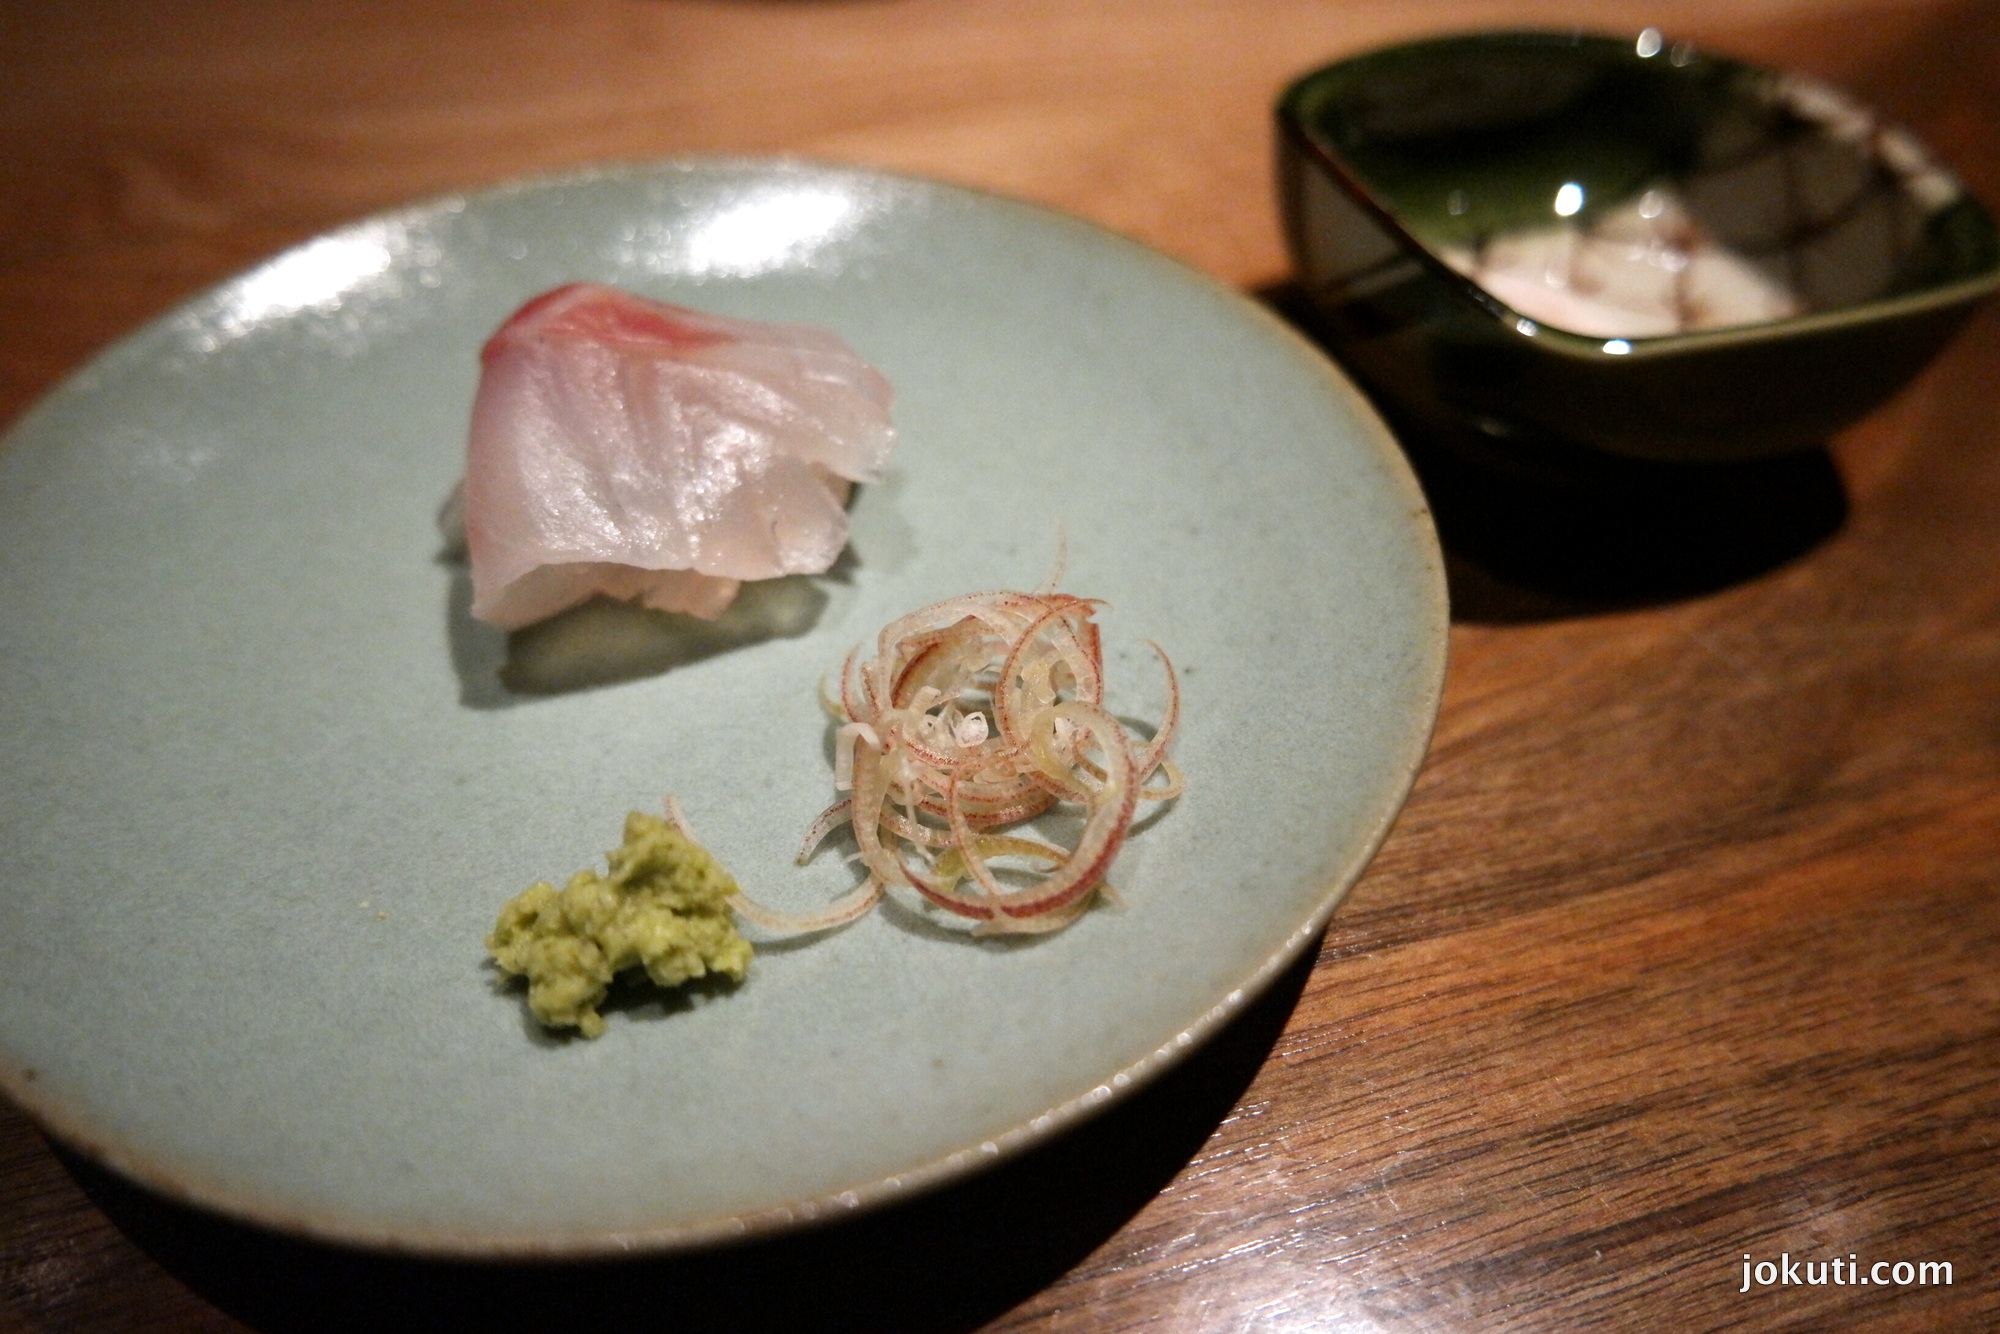 Tengeri sügér sashimi, sóval, wasabival és japán shalottával (myoga) tálalva